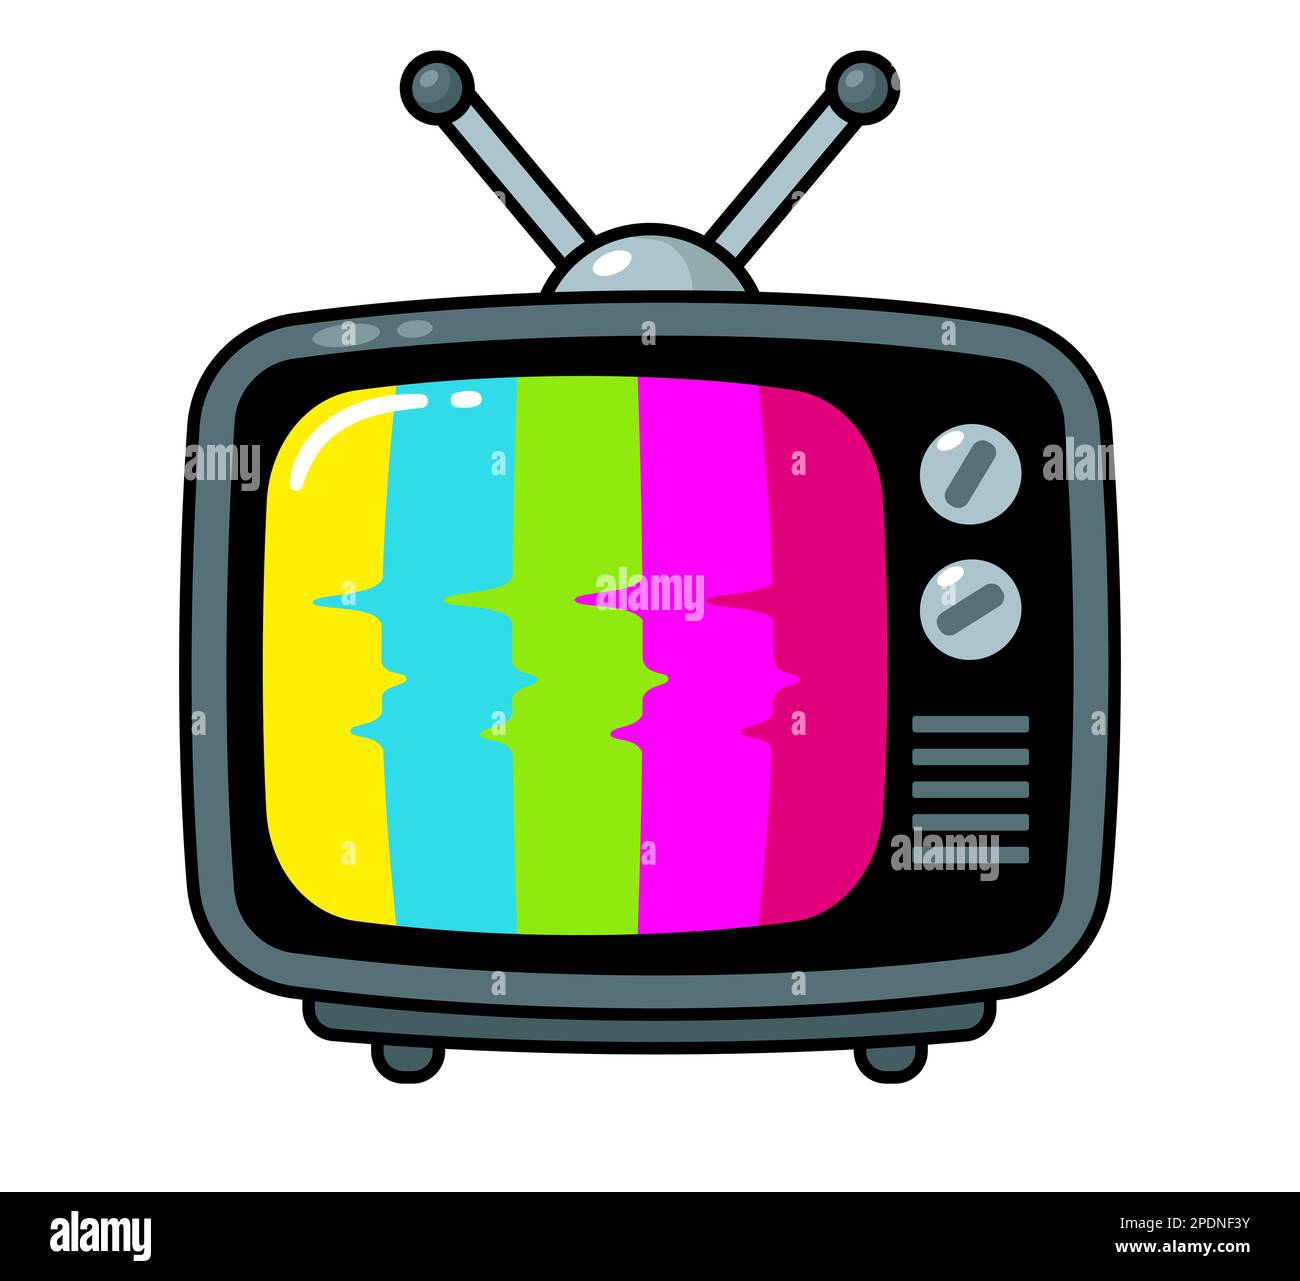 Vintage-Fernseher im einfachen Cartoon-Stil. Kein Signal, farbige Streifen (TV-Testmuster). Vektor-Clip-Art-Illustration. Stock Vektor